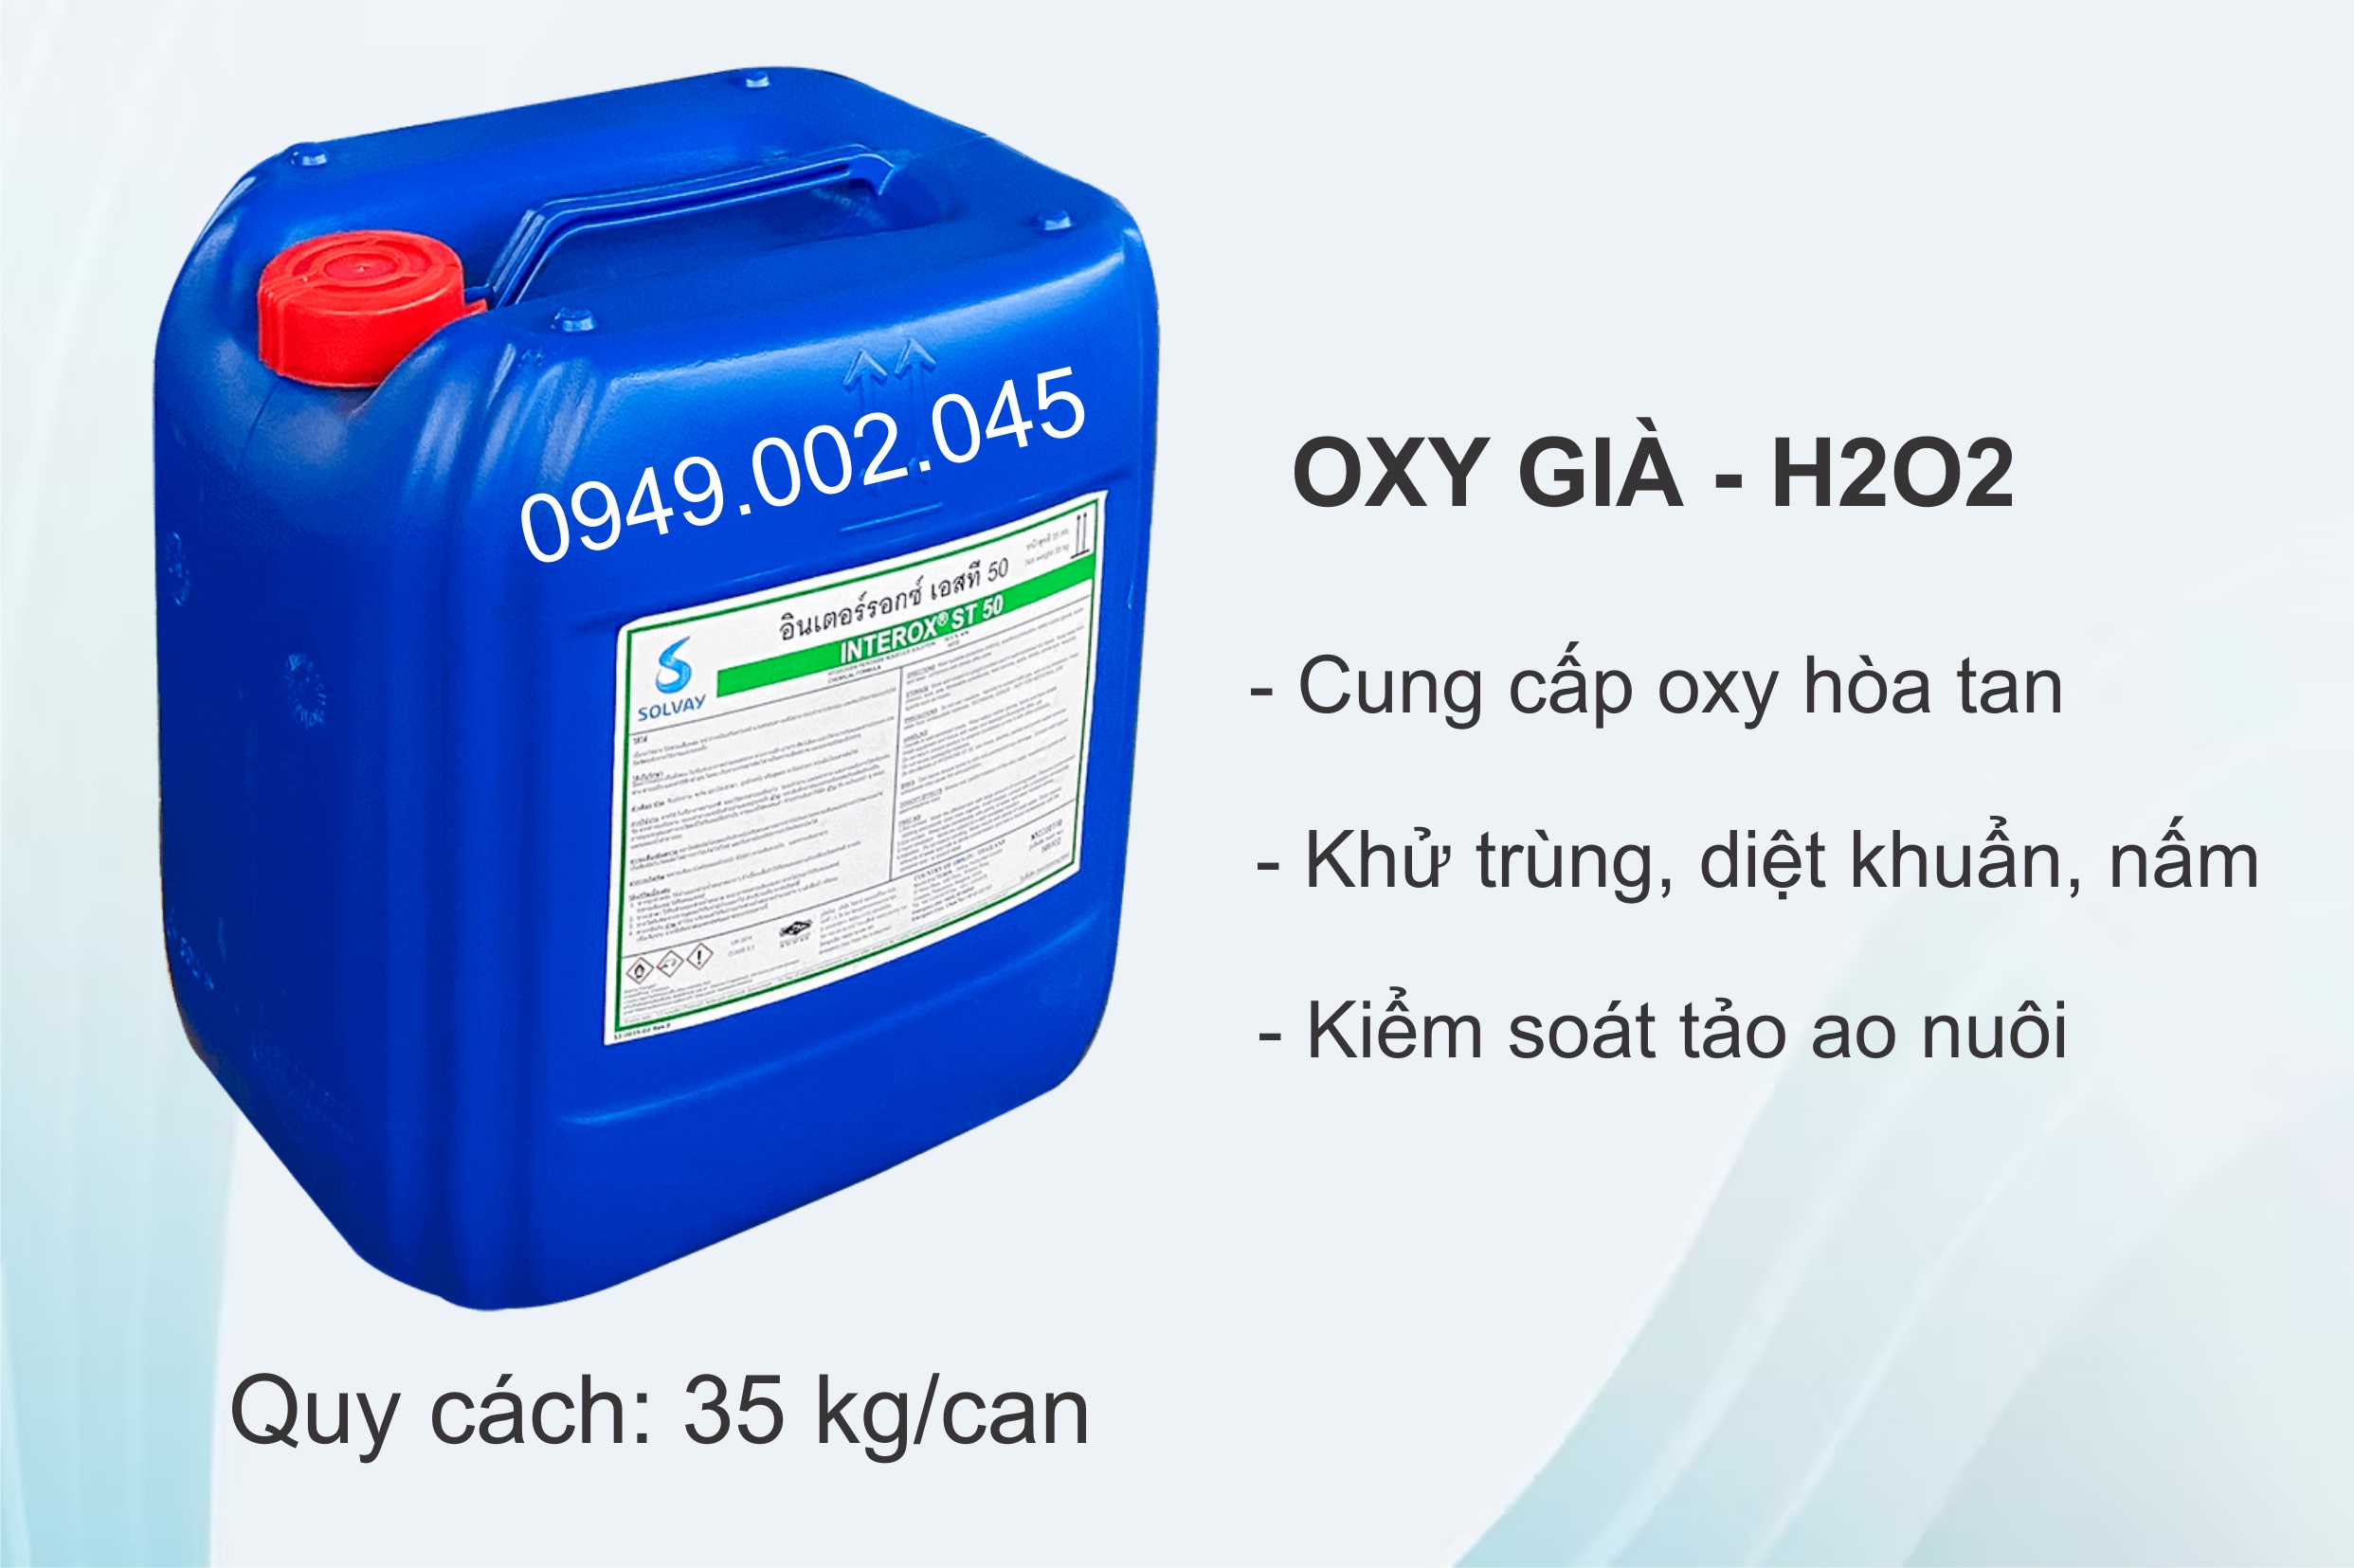 Oxy Già (Solvay Thái Lan) - Cung cấp oxy hòa tan cho ao nuôi tôm cá